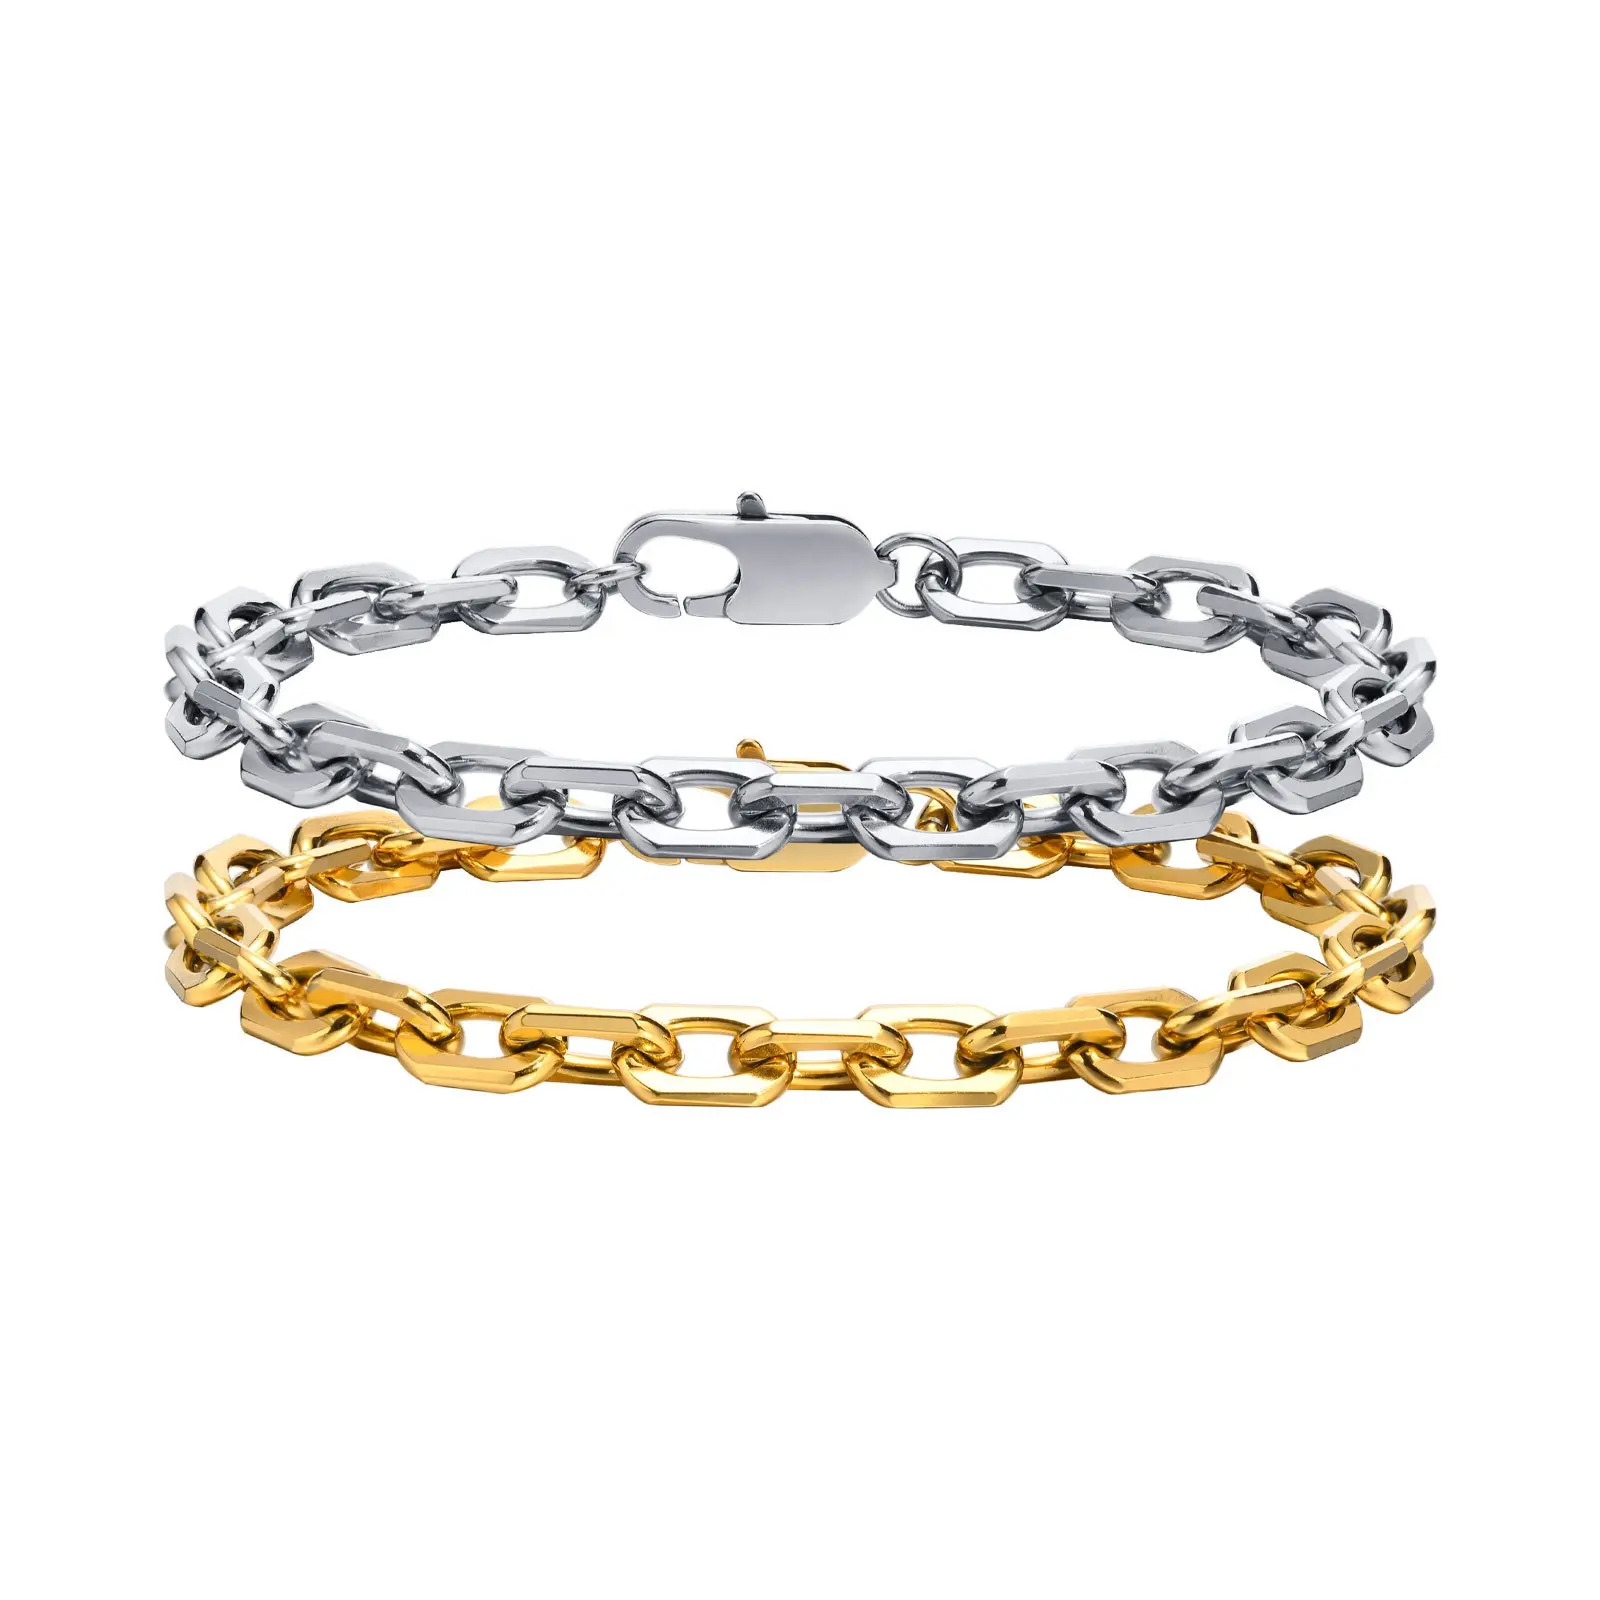 Korean Design 18k Pvd Gold Plated Stainless Steel Cross Chain Bracelet Jewelry For Men Women